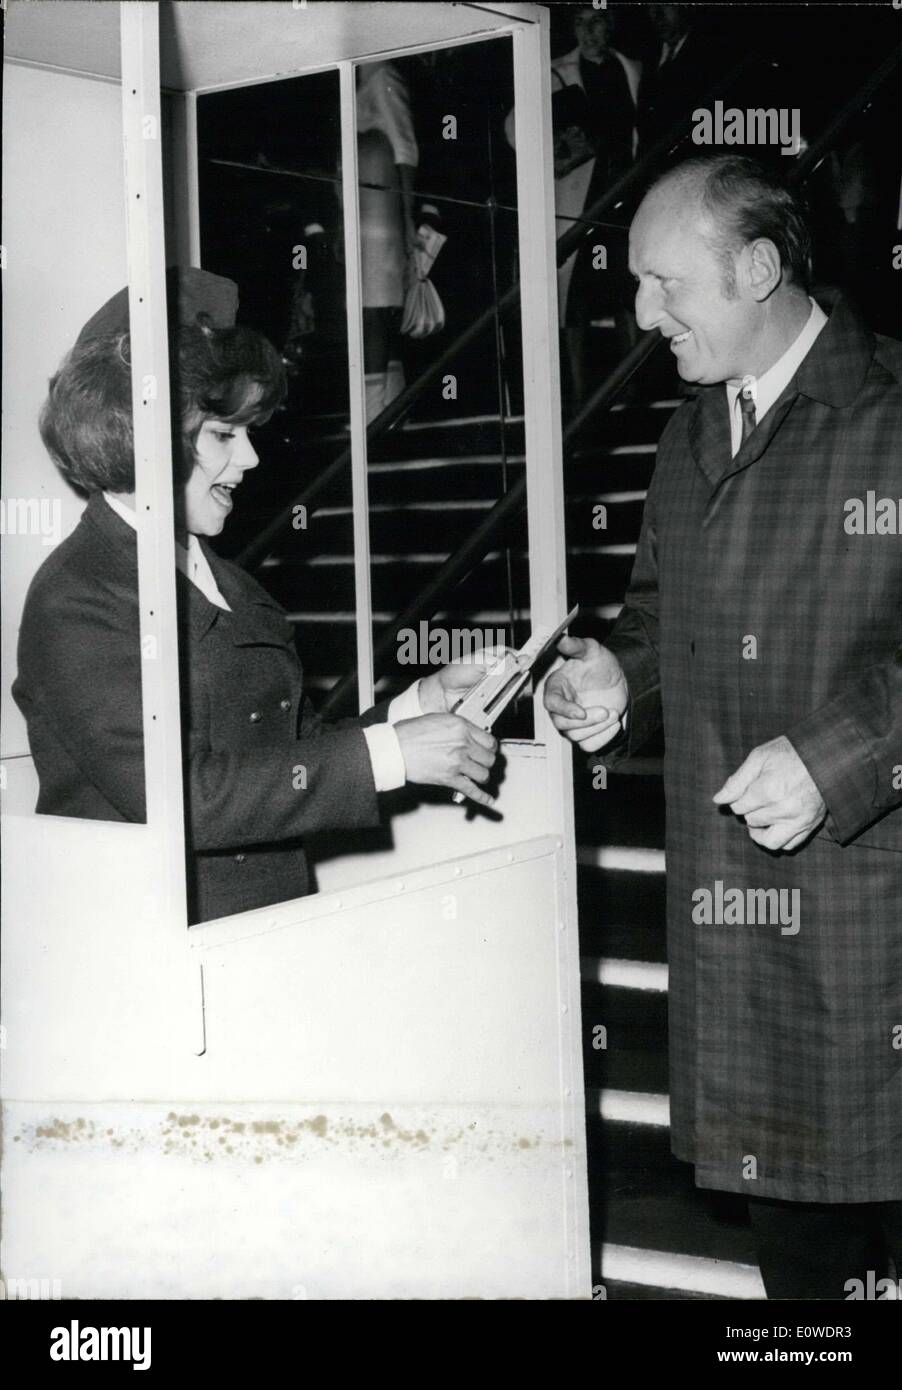 Juin 10, 1962 - Françoise Deldick, héroïne du film ''La grosse caisse'' transformé en un ticket de métro perforateur et contrôlé les billets de Bourvil à l'entrée de la première du film. Banque D'Images